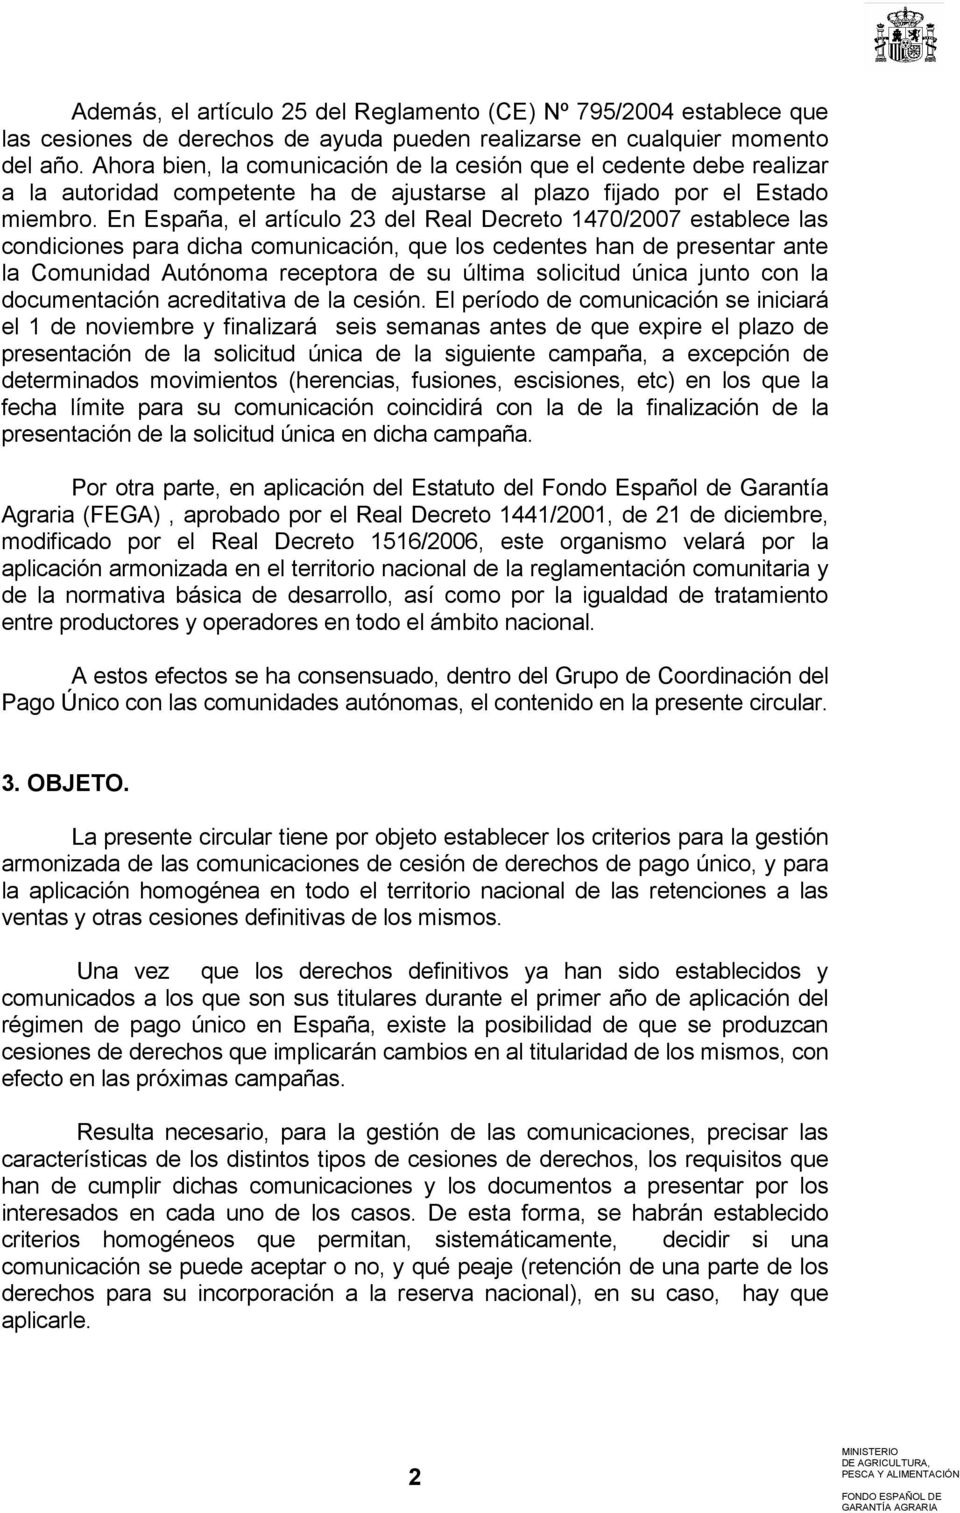 En España, el artículo 23 del Real Decreto 1470/2007 establece las condiciones para dicha comunicación, que los cedentes han de presentar ante la Comunidad Autónoma receptora de su última solicitud